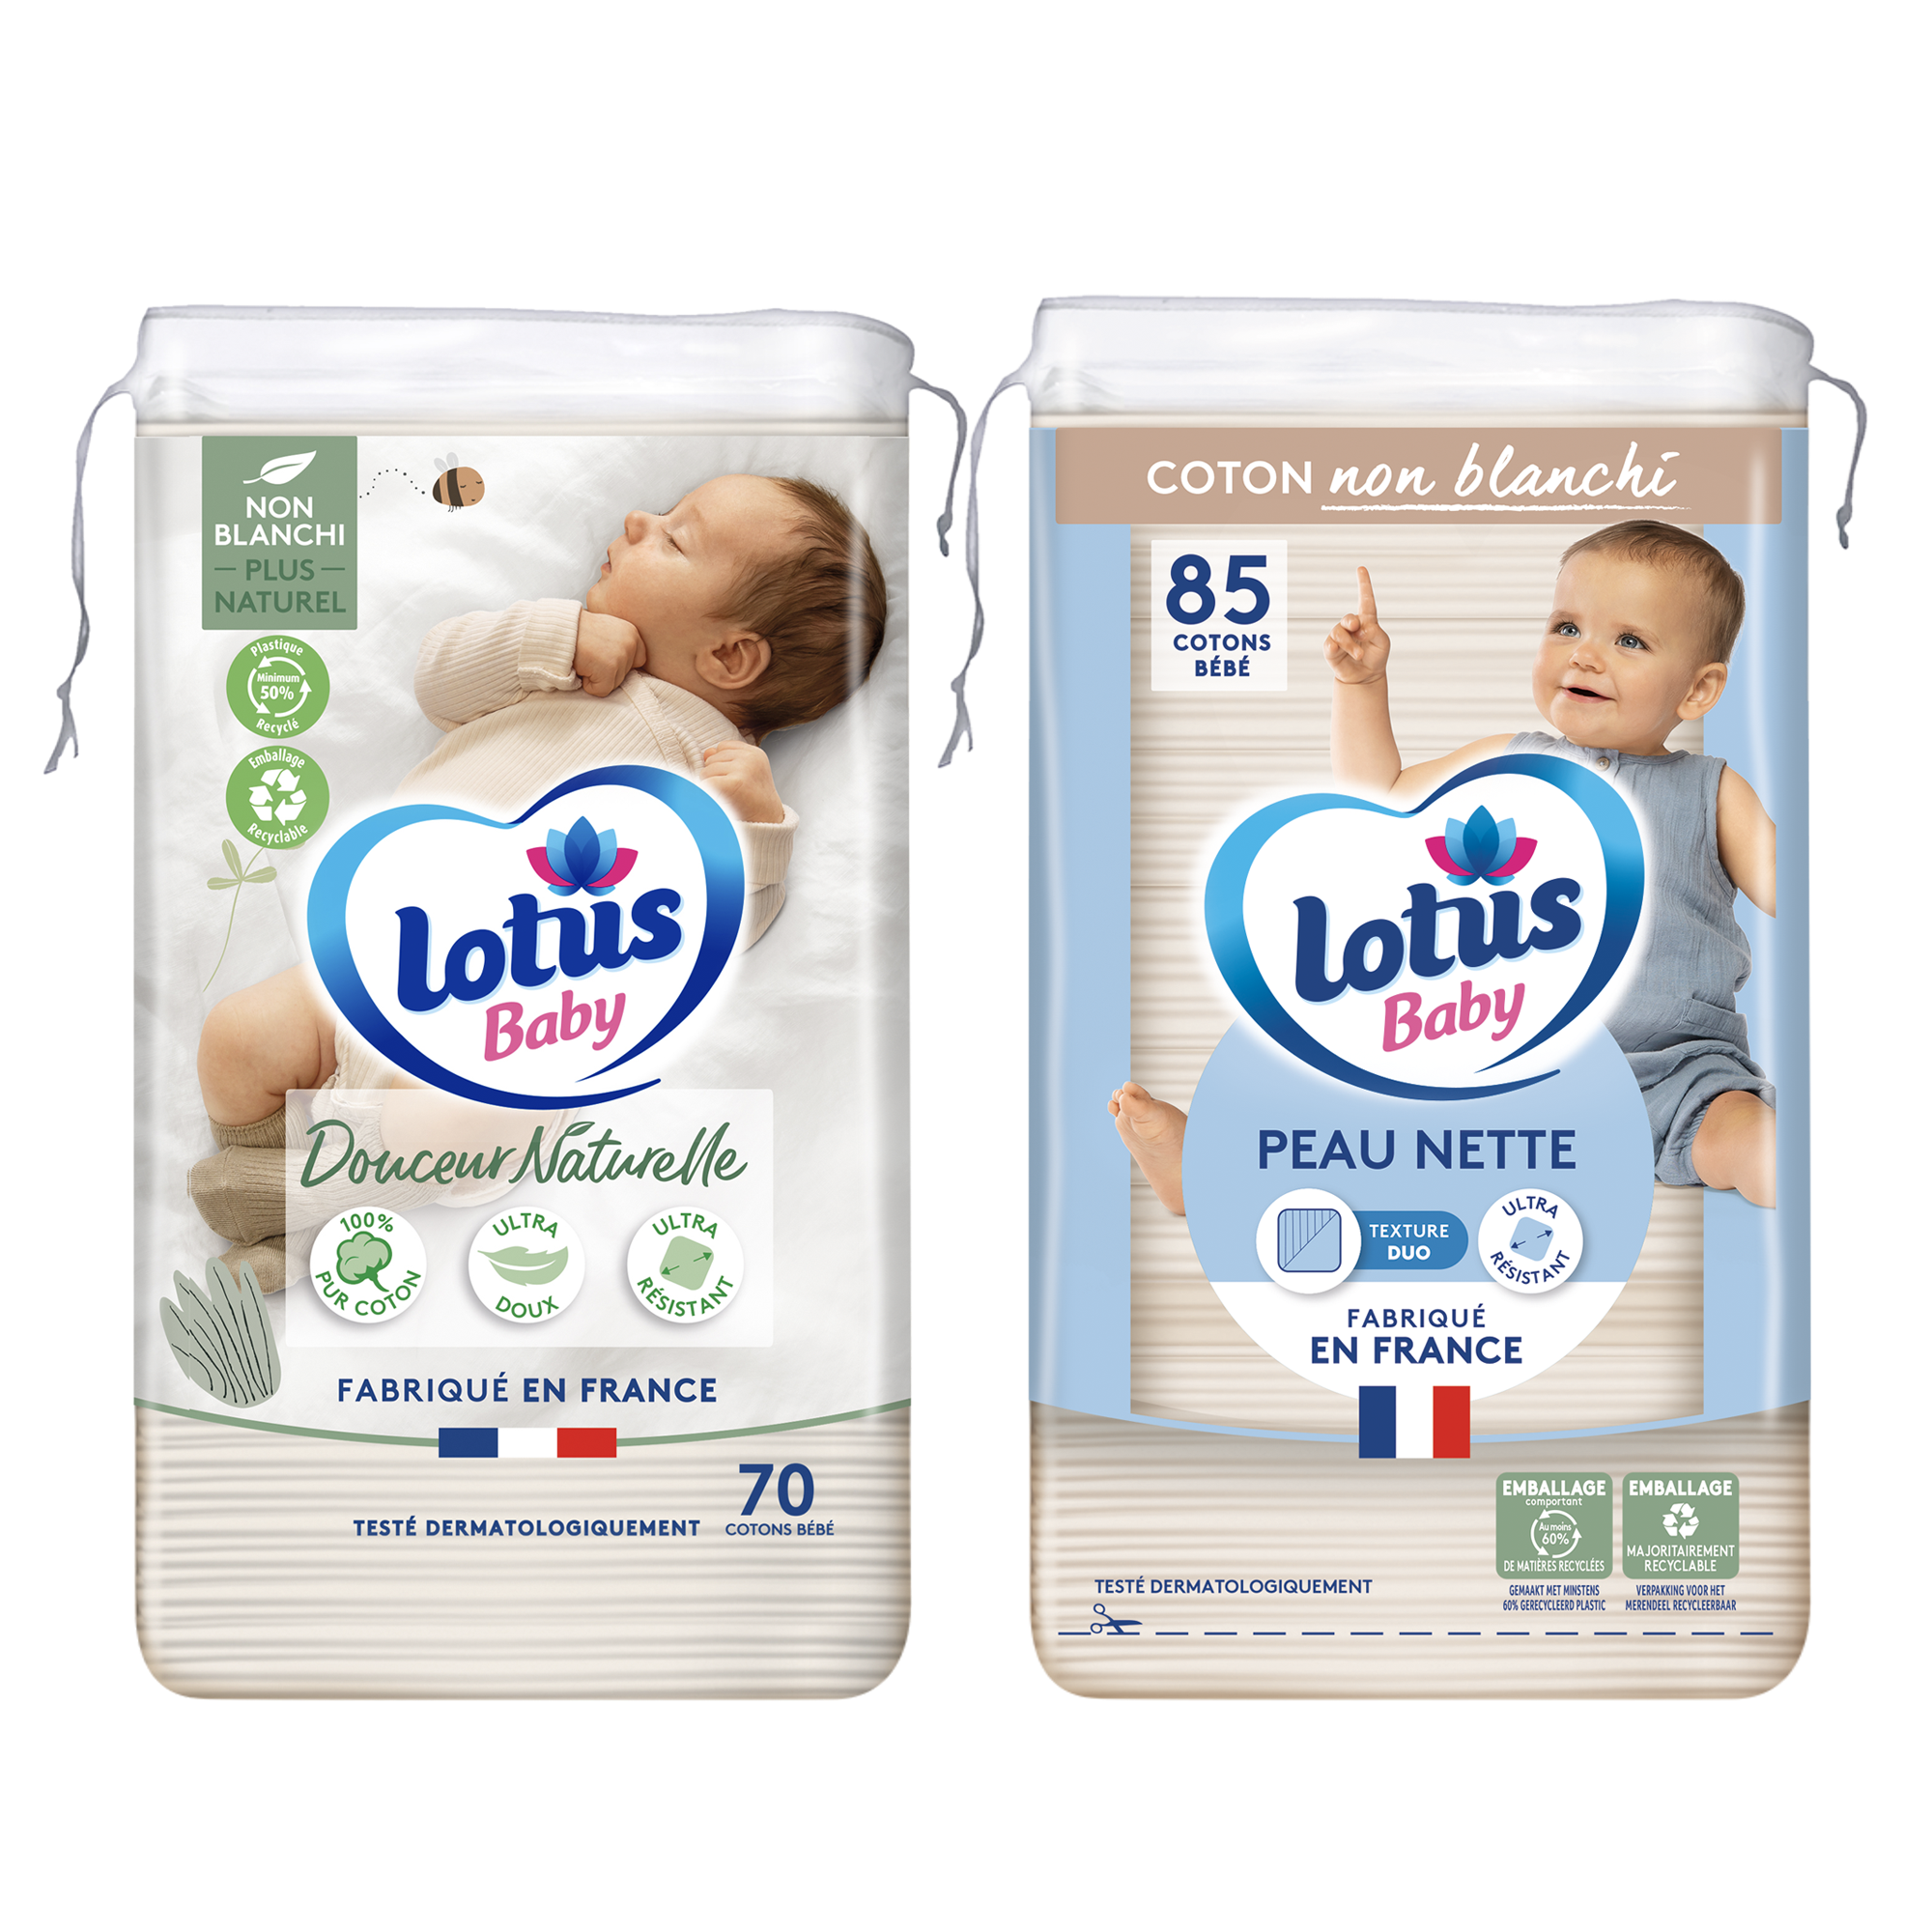 Découvrir notre gamme Lotus Baby, Avec les produits Lotus Baby, c'est la  douceur assurée pour la peau délicate de bébé toute l'année 💙 #lotusbaby  #bébé #douceur #lebienêtreauquotidien, By Lotus Baby